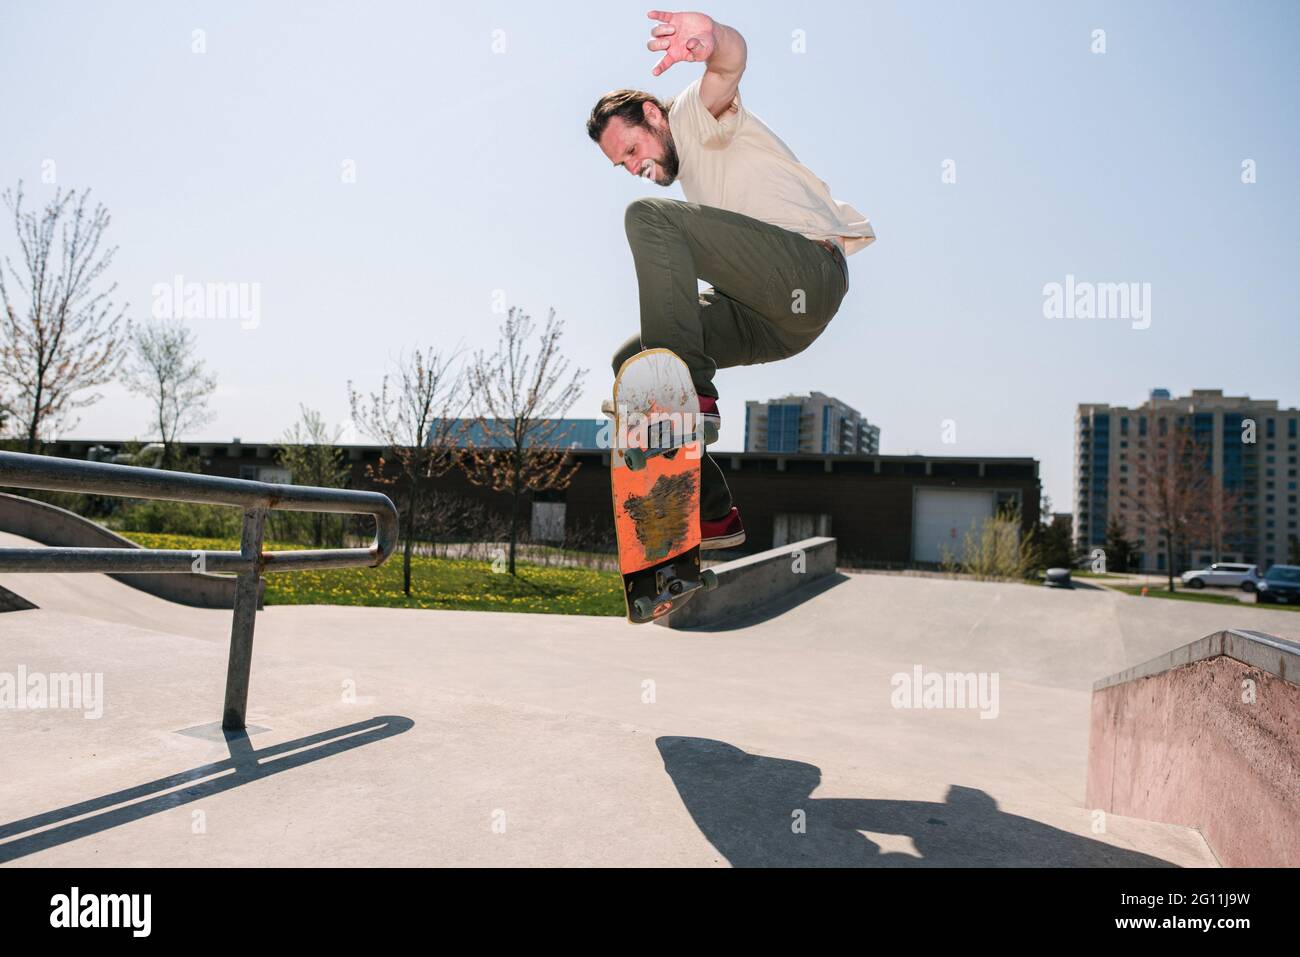 Canada, Ontario, Kingston, Man skateboarding in skate park Stock Photo